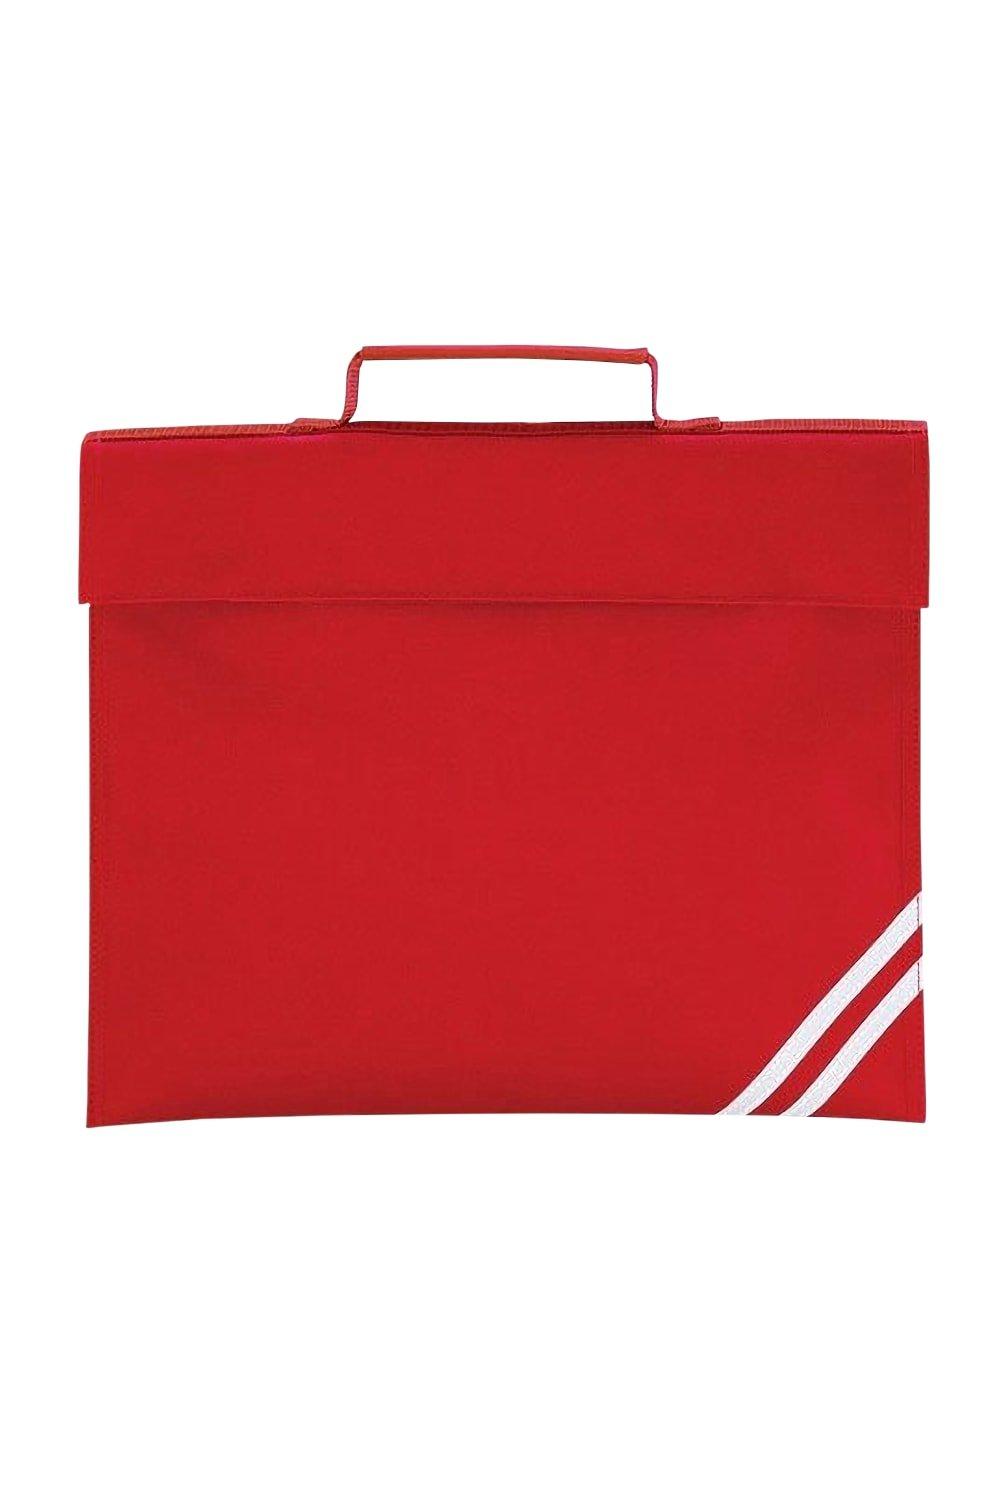 Классическая сумка для книг - 5 литров (2 шт. в упаковке) Quadra, красный